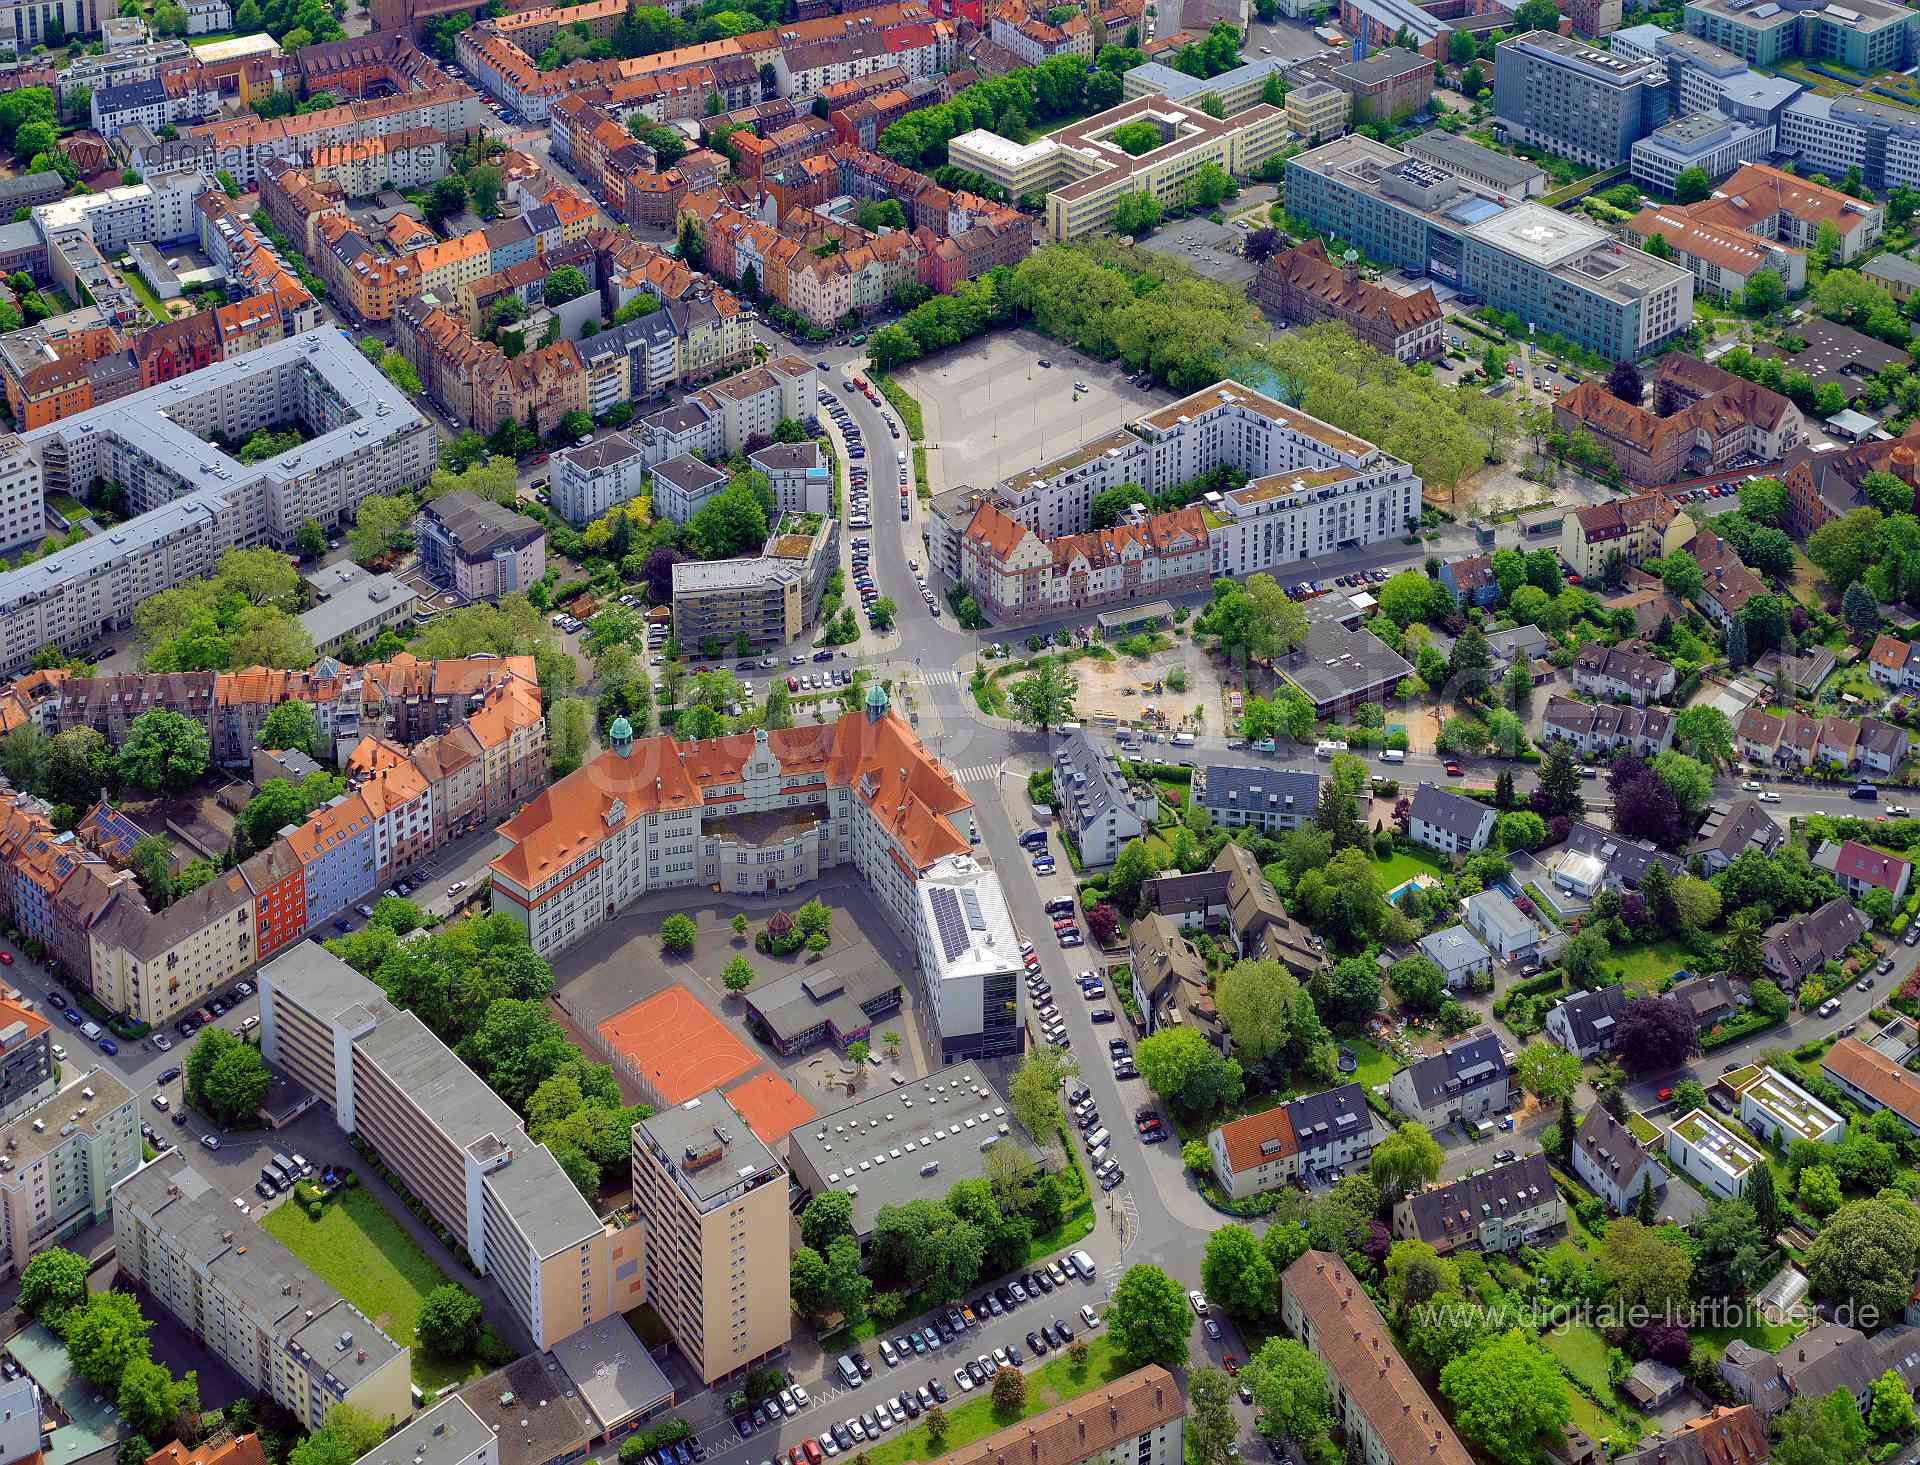 Luftbild - Bielingplatz, Ort: Nürnberg, Tags: Bielingplatz, Nordstadt, Peter-Vischer-Schule, Schule, , Bielingplatz, Halle...